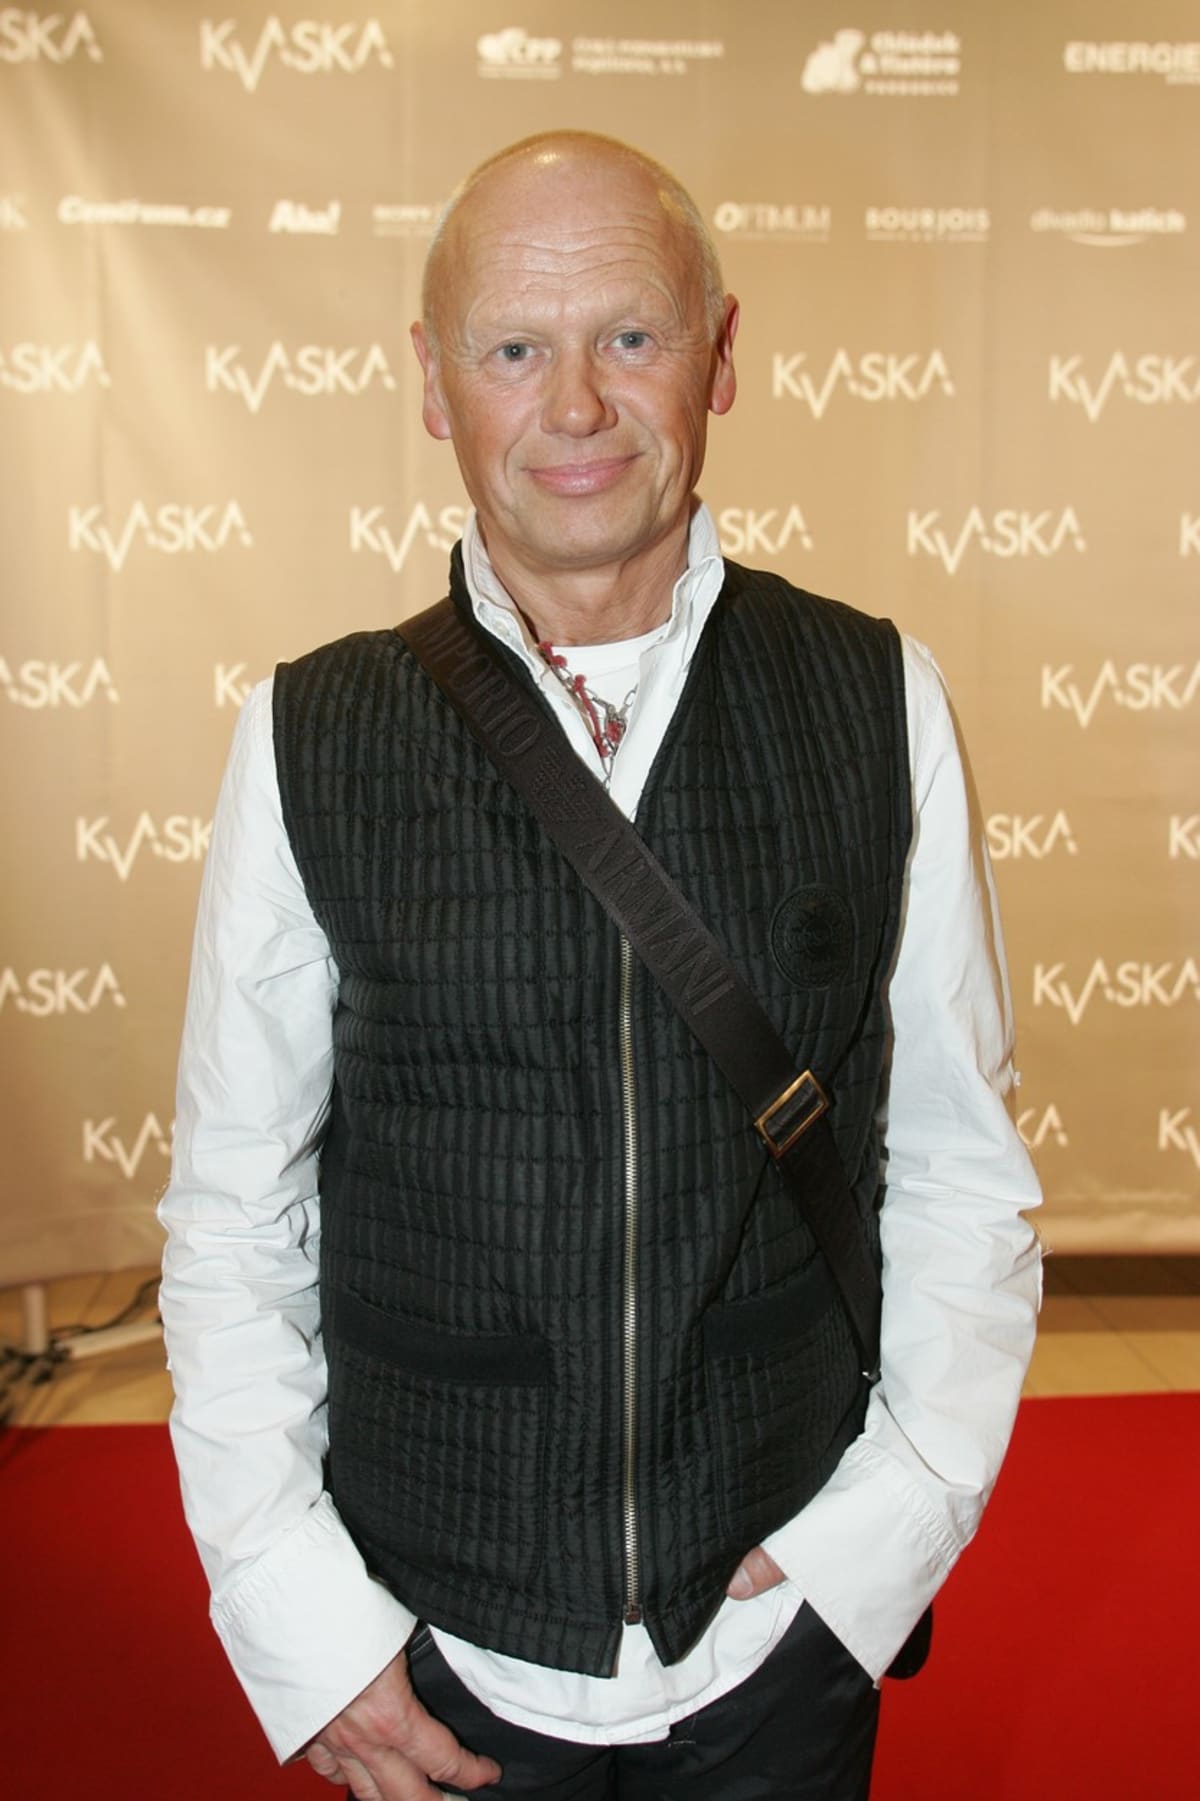 Jiří Korn nazpíval píseň Miss Moskva, která svého času patřila mezi velké hity.